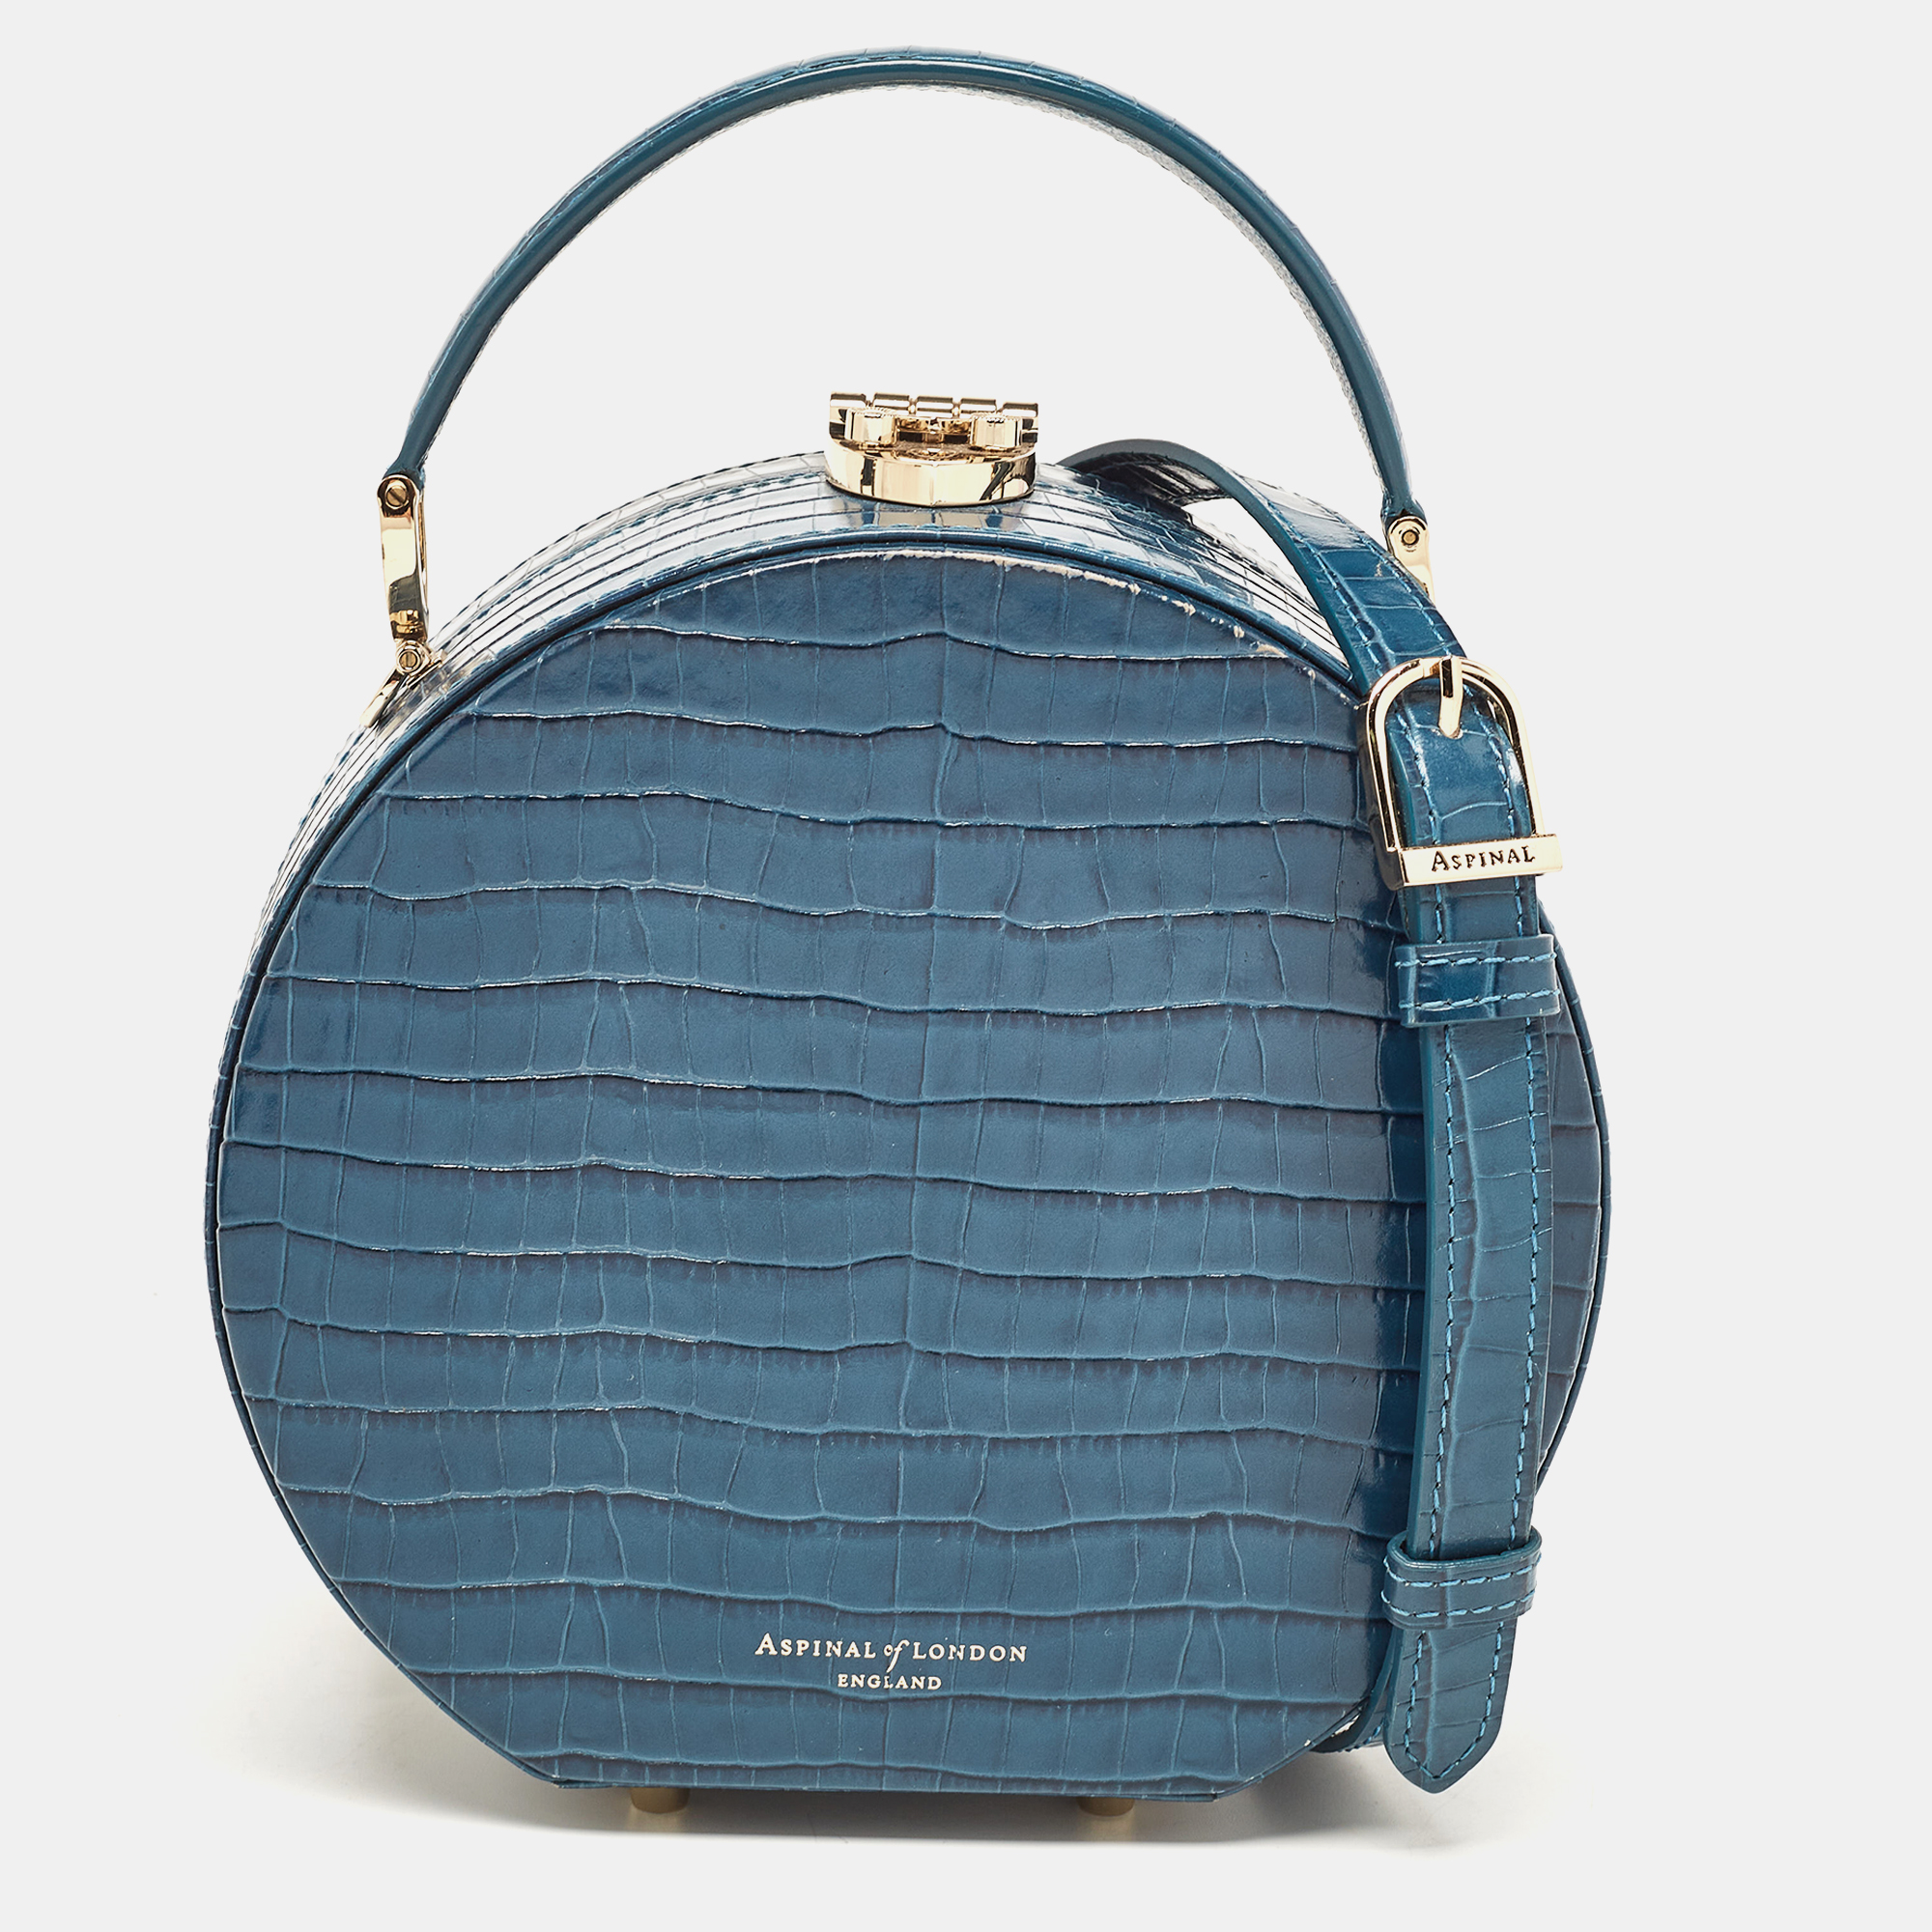 aspinal of london teal blue croc embossed leather hat box shoulder bag